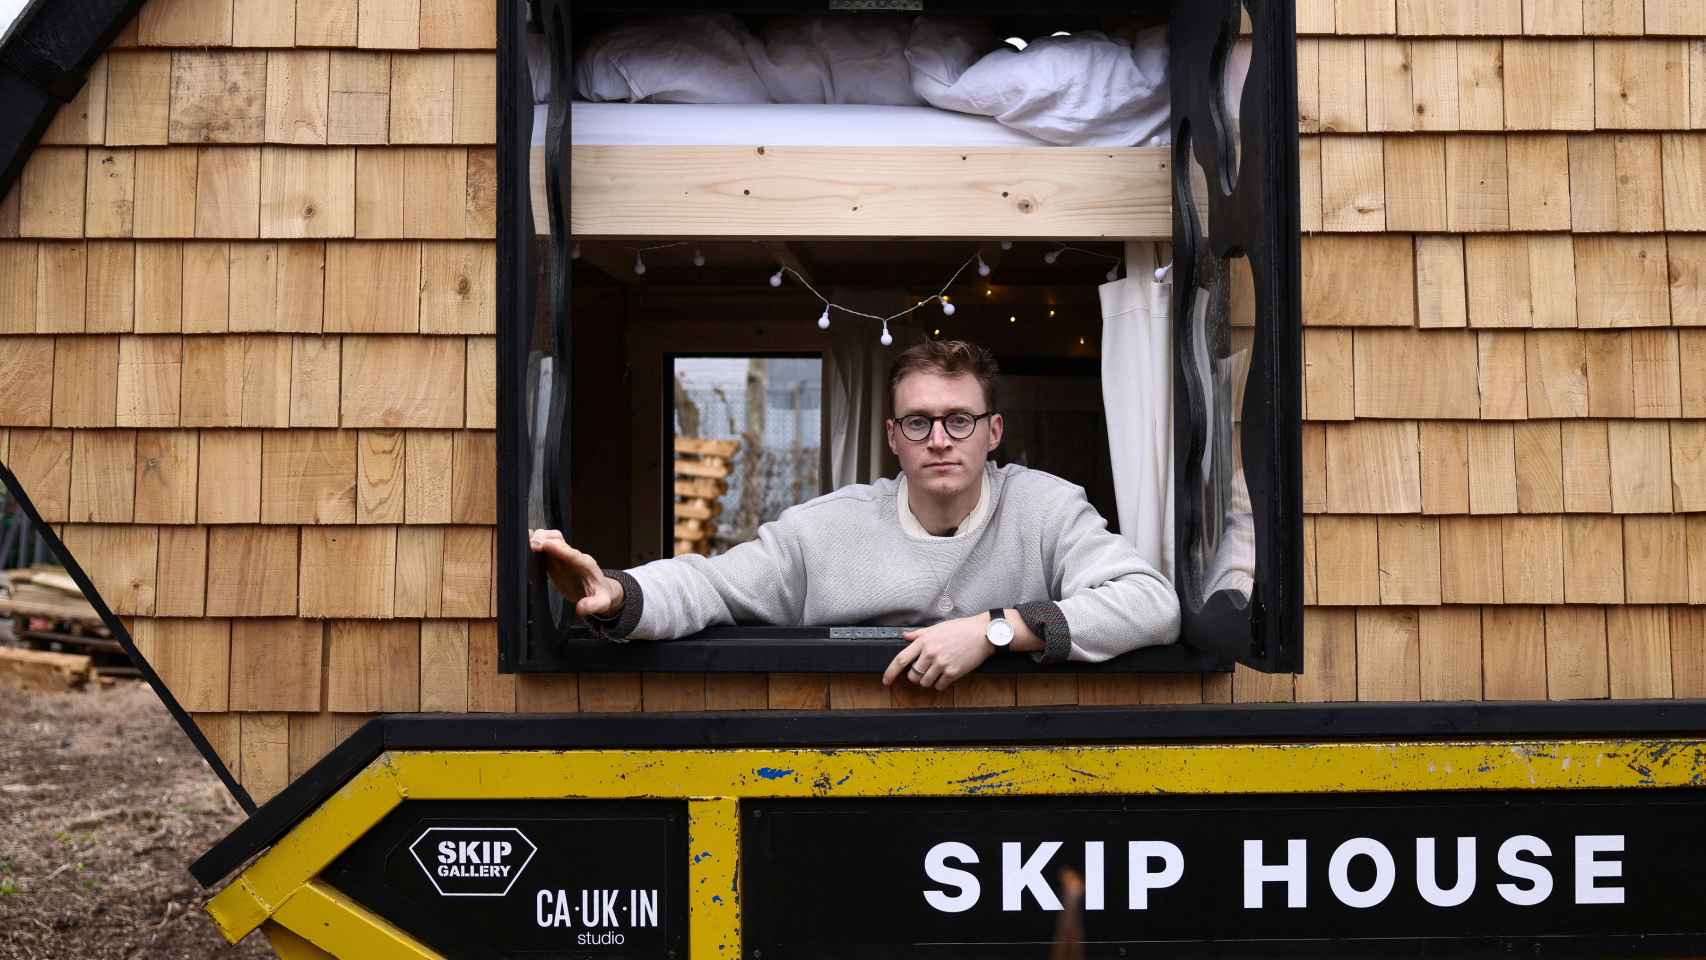 El artista Harrison Marshall posa en el interior del contenedor que ha convertido en vivienda, en la que pretende vivir durante un año.